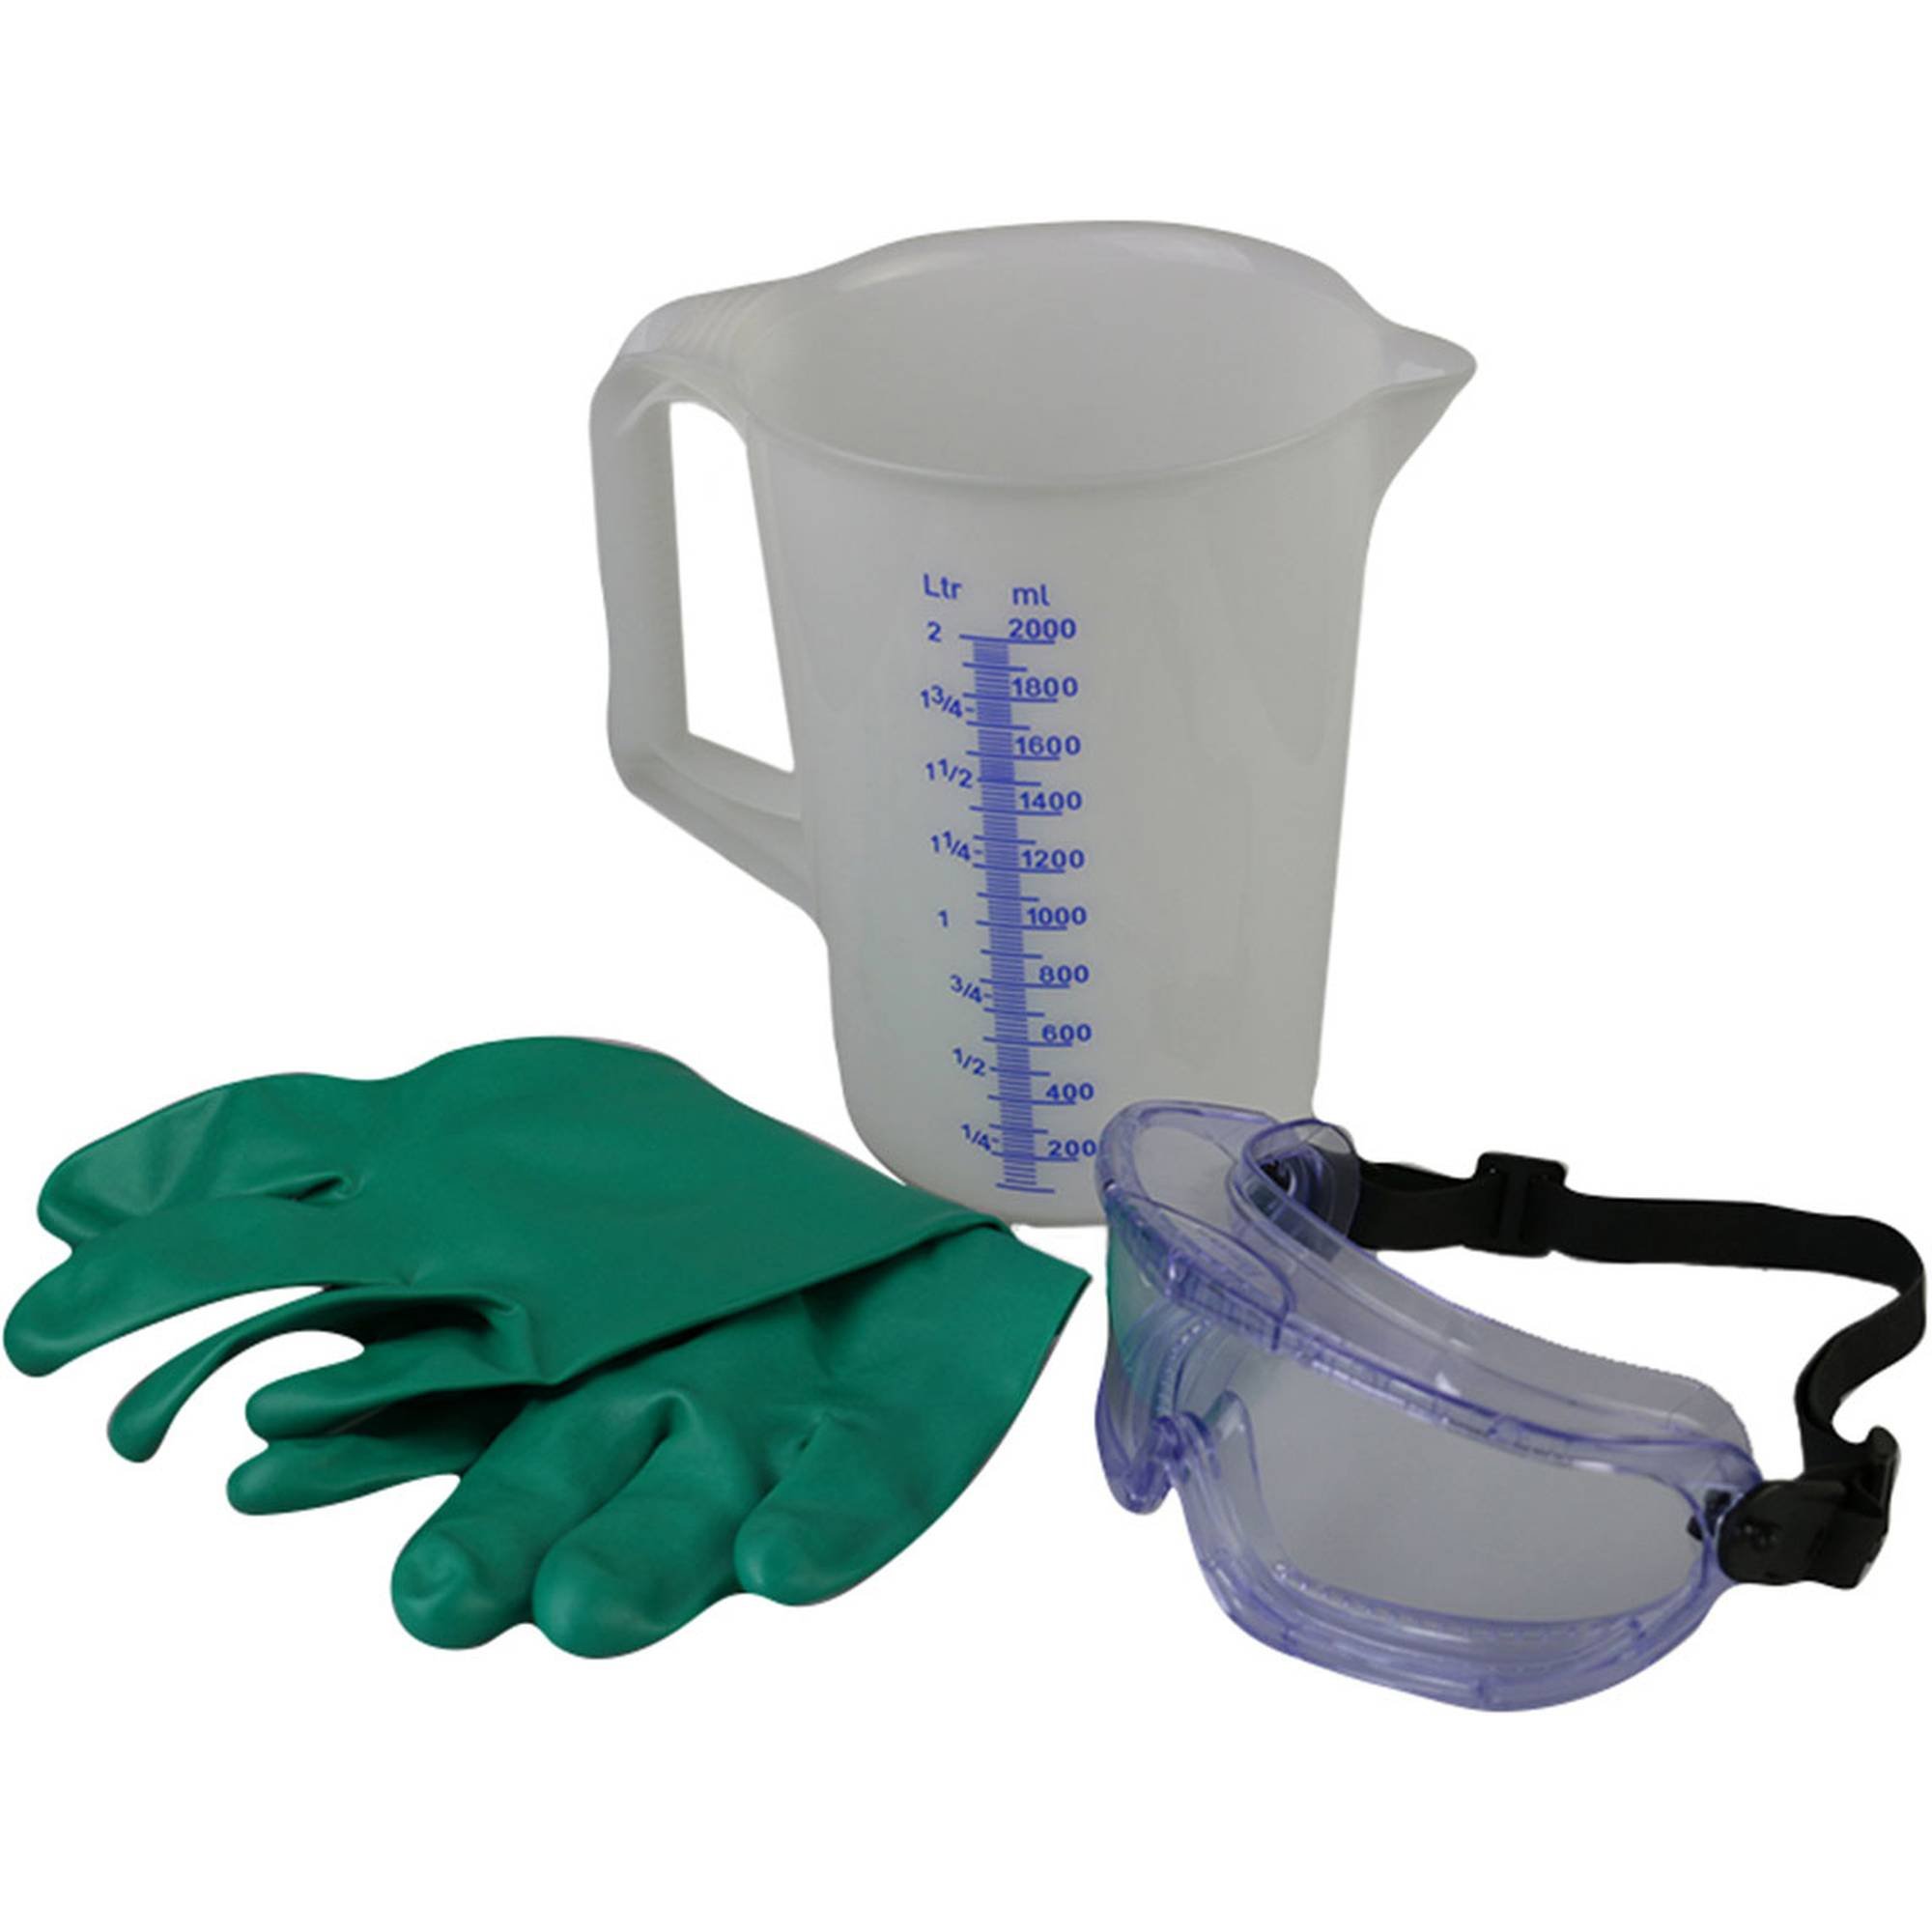 Chemie-Sicherheitsmess-Set- Messbecher, Schutzbrille, Schutzhandschuh, Web Shop